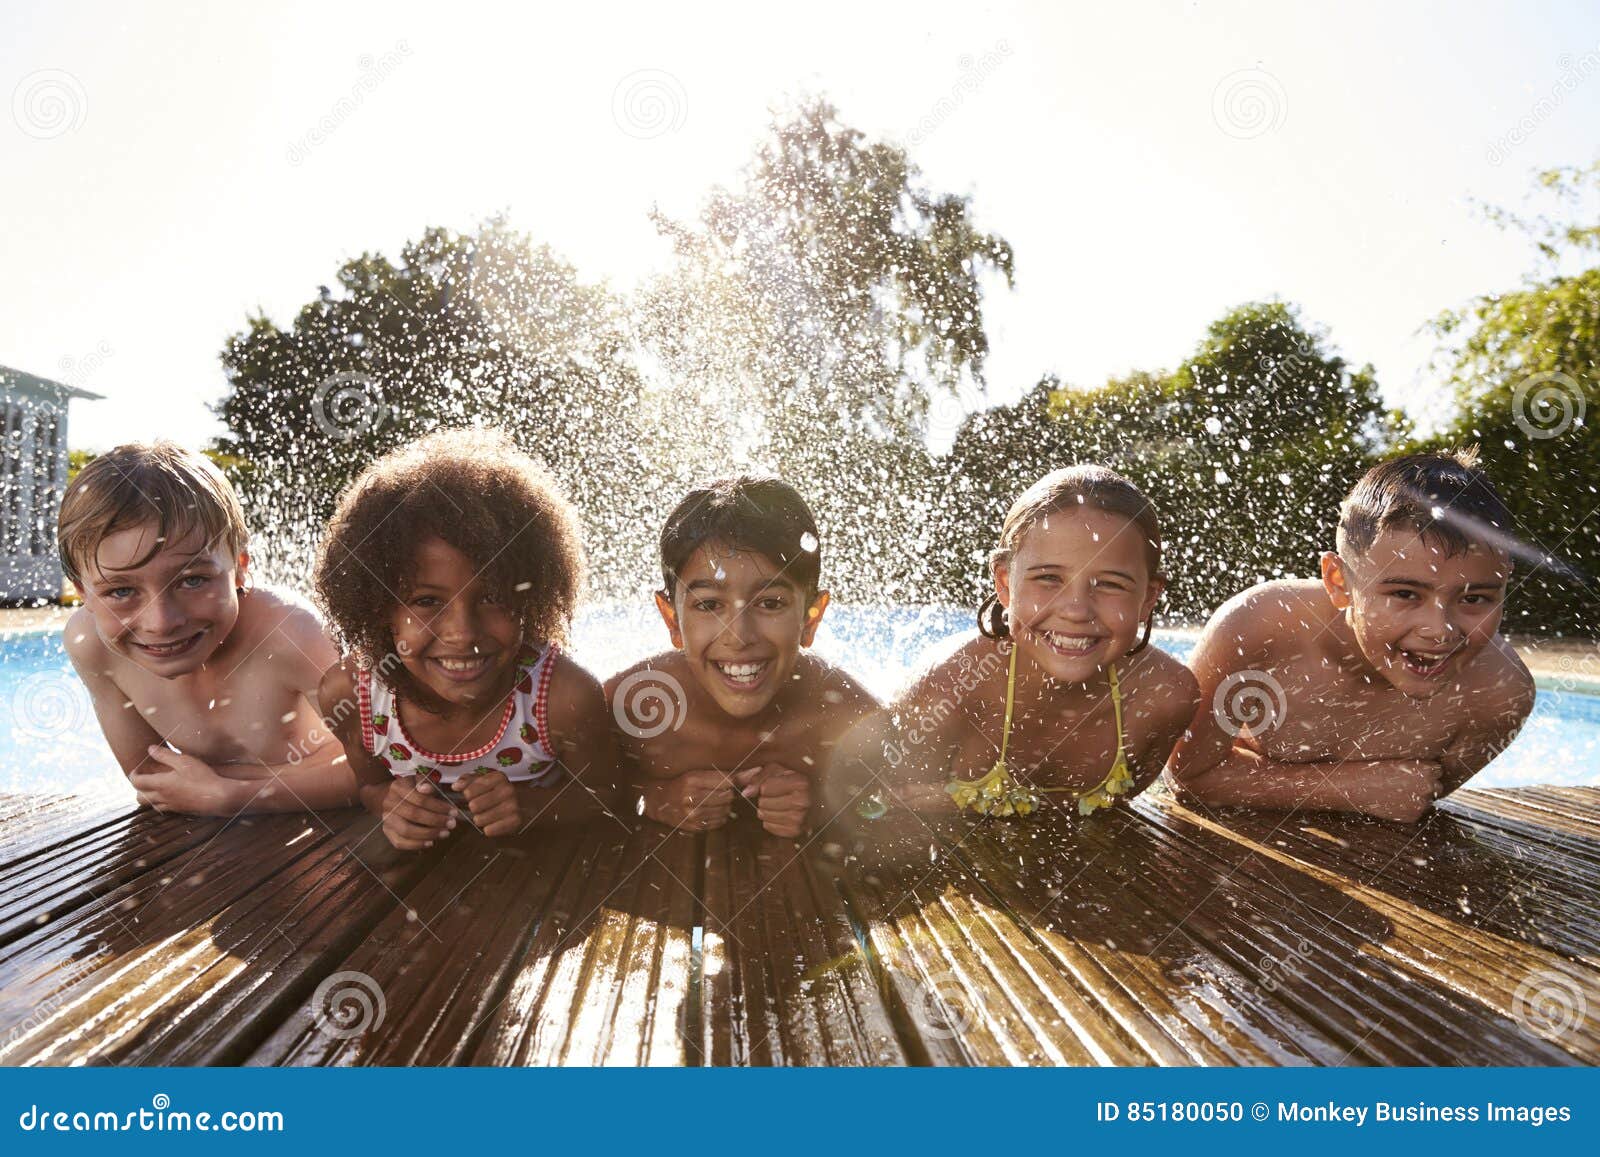 portrait of children having fun in outdoor swimming pool